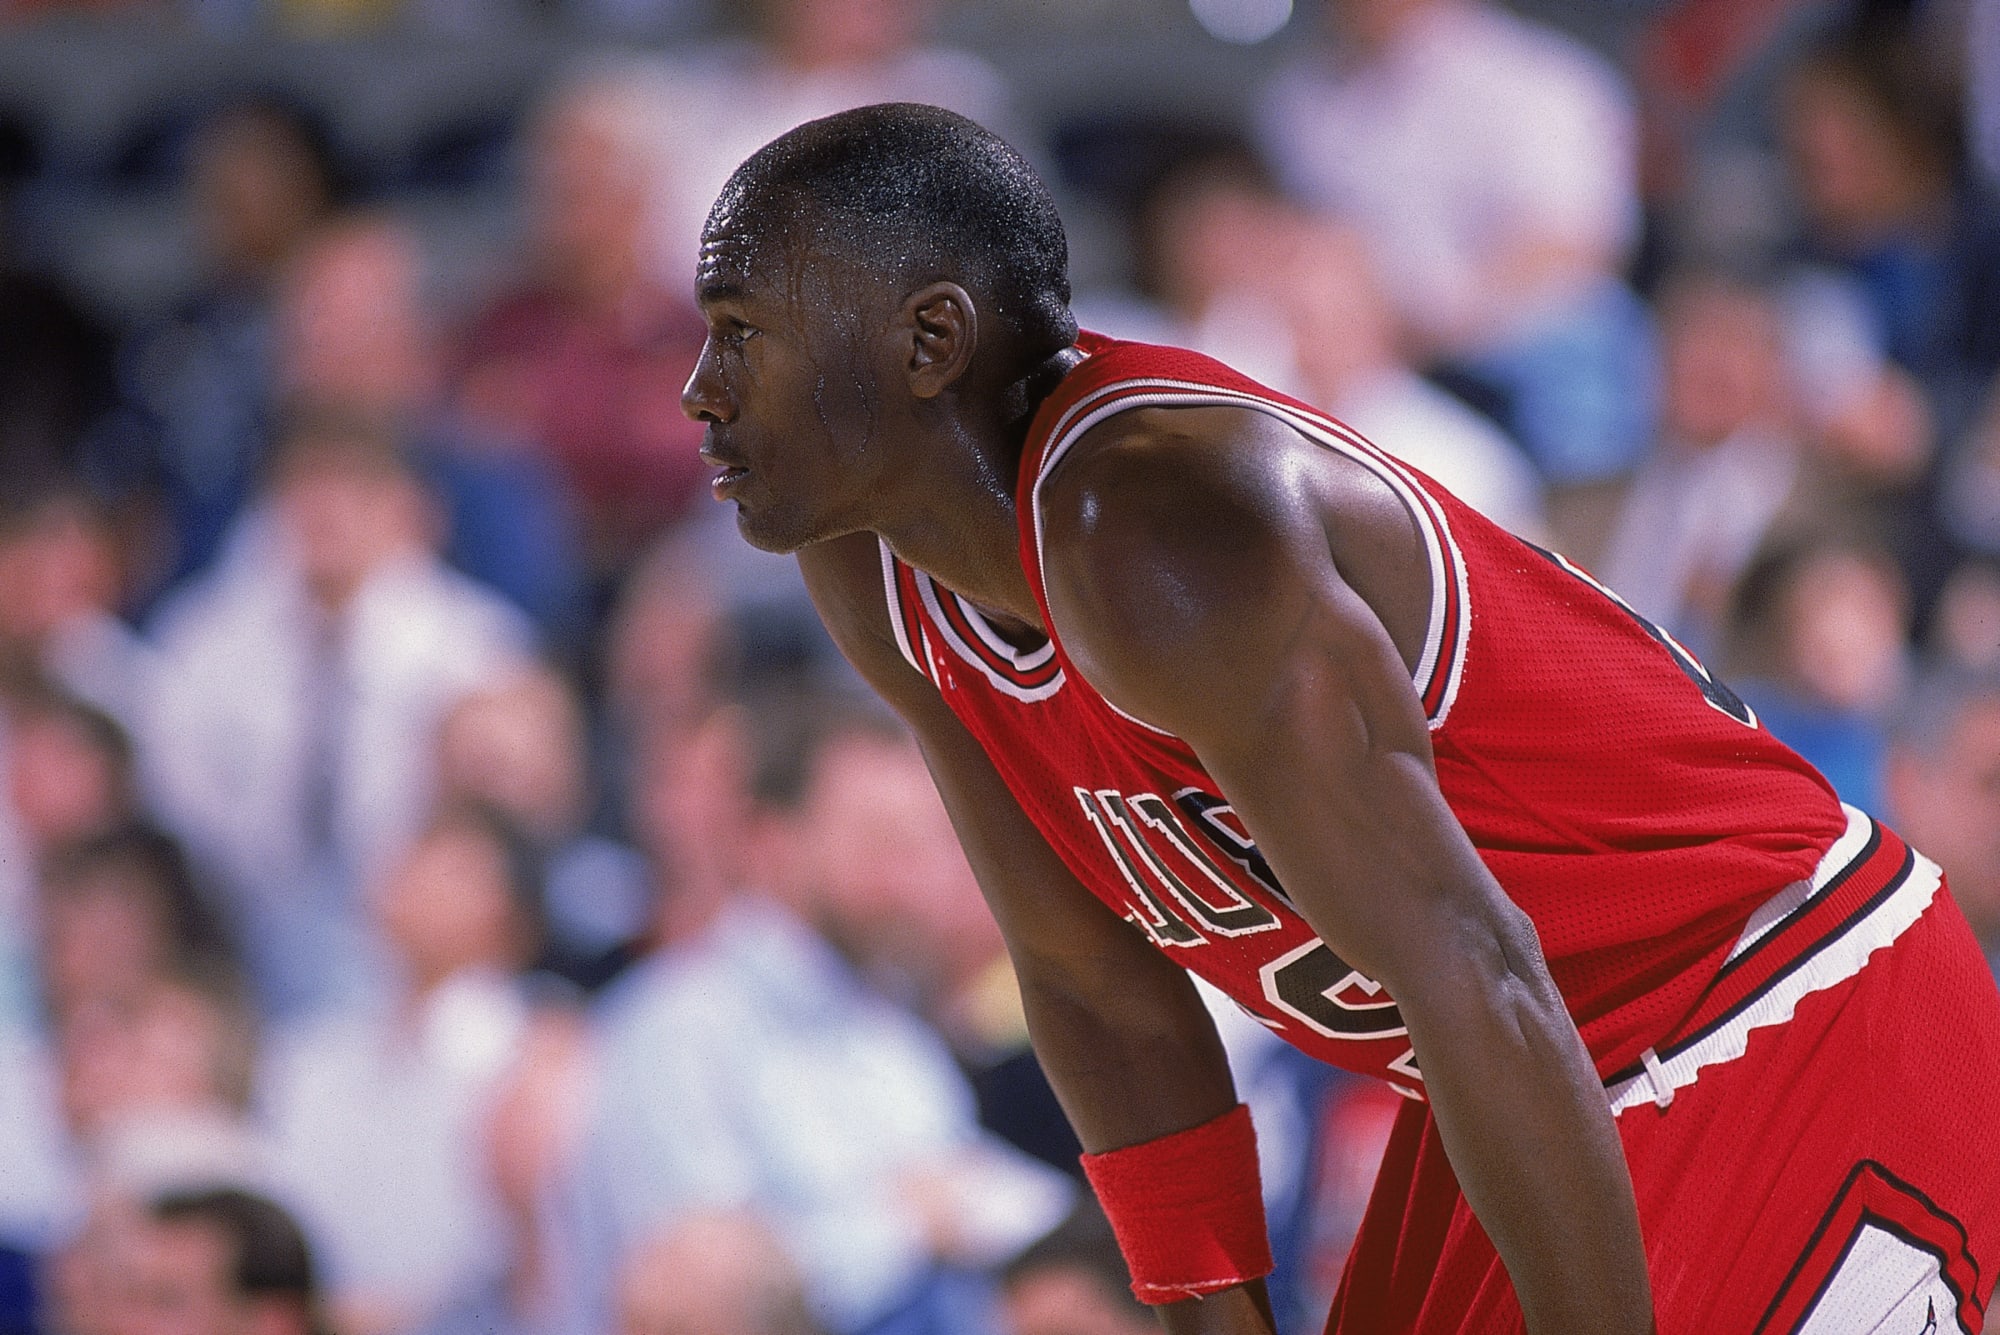 Michael Jordan's clutch play in Game 6 of 1998 NBA Finals went